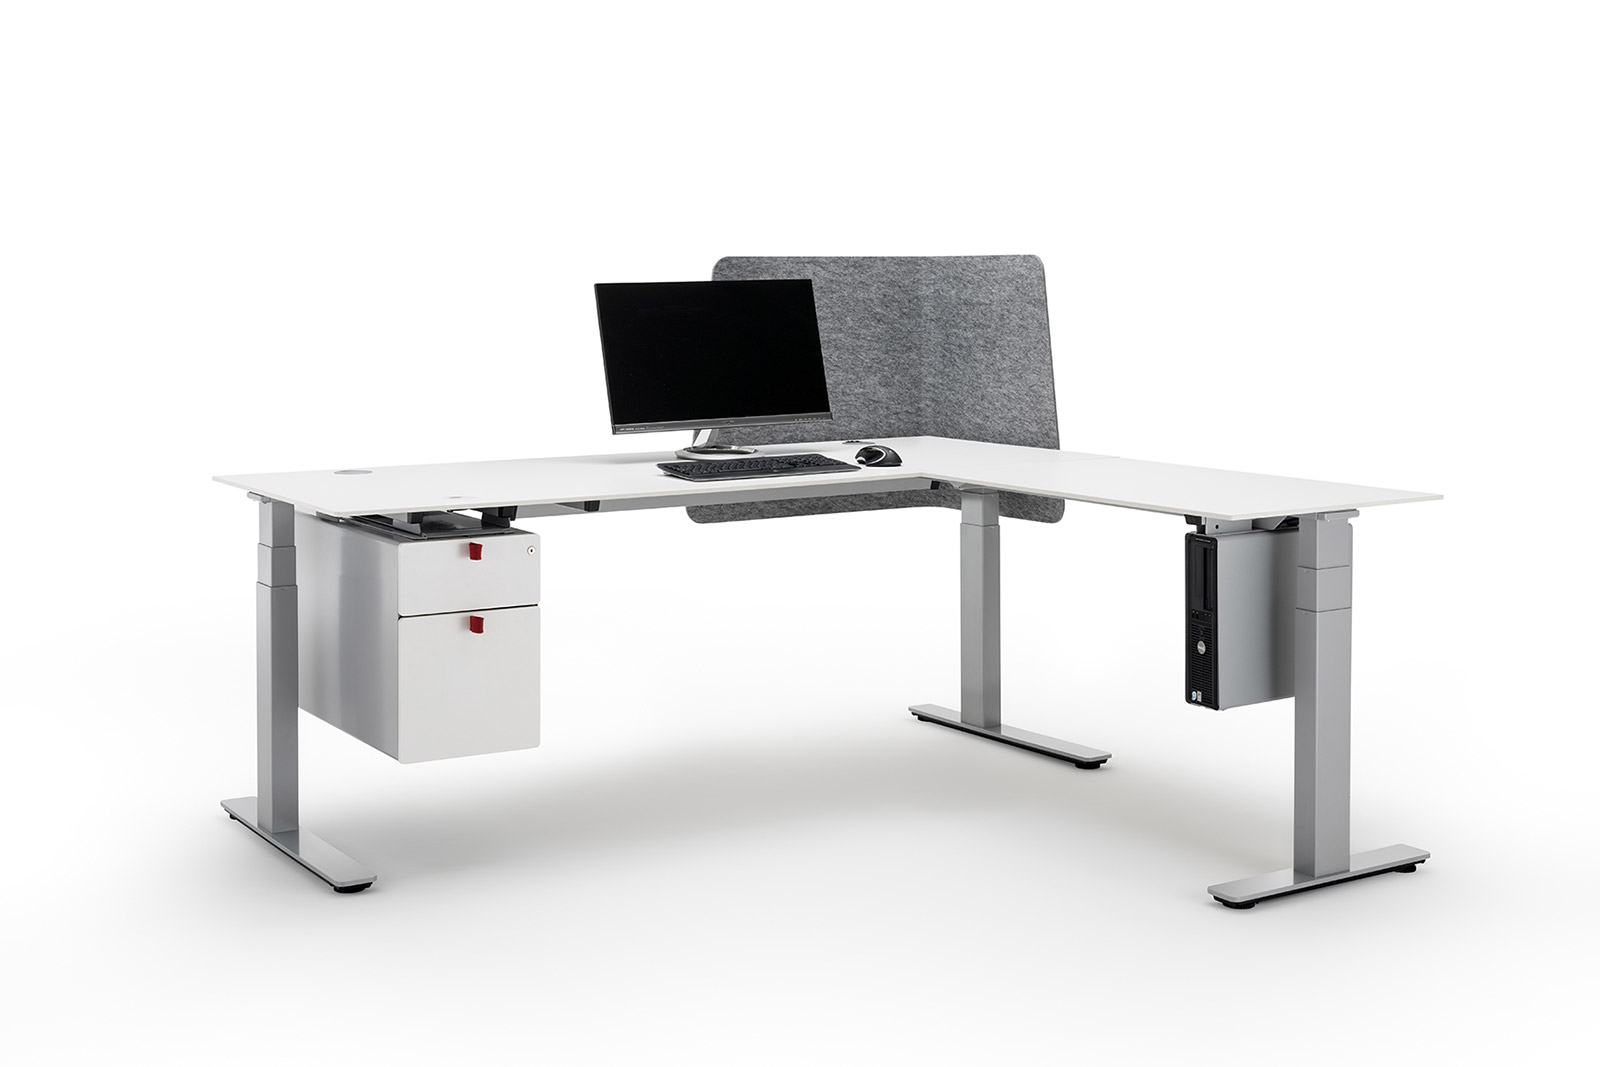 Der modulare Aufbau des Officys-Tischgestell-Systems von Häfele sorgt für höchste Flexibilität und Anpassungsfähigkeit an unterschiedlichste Kundenwünsche.